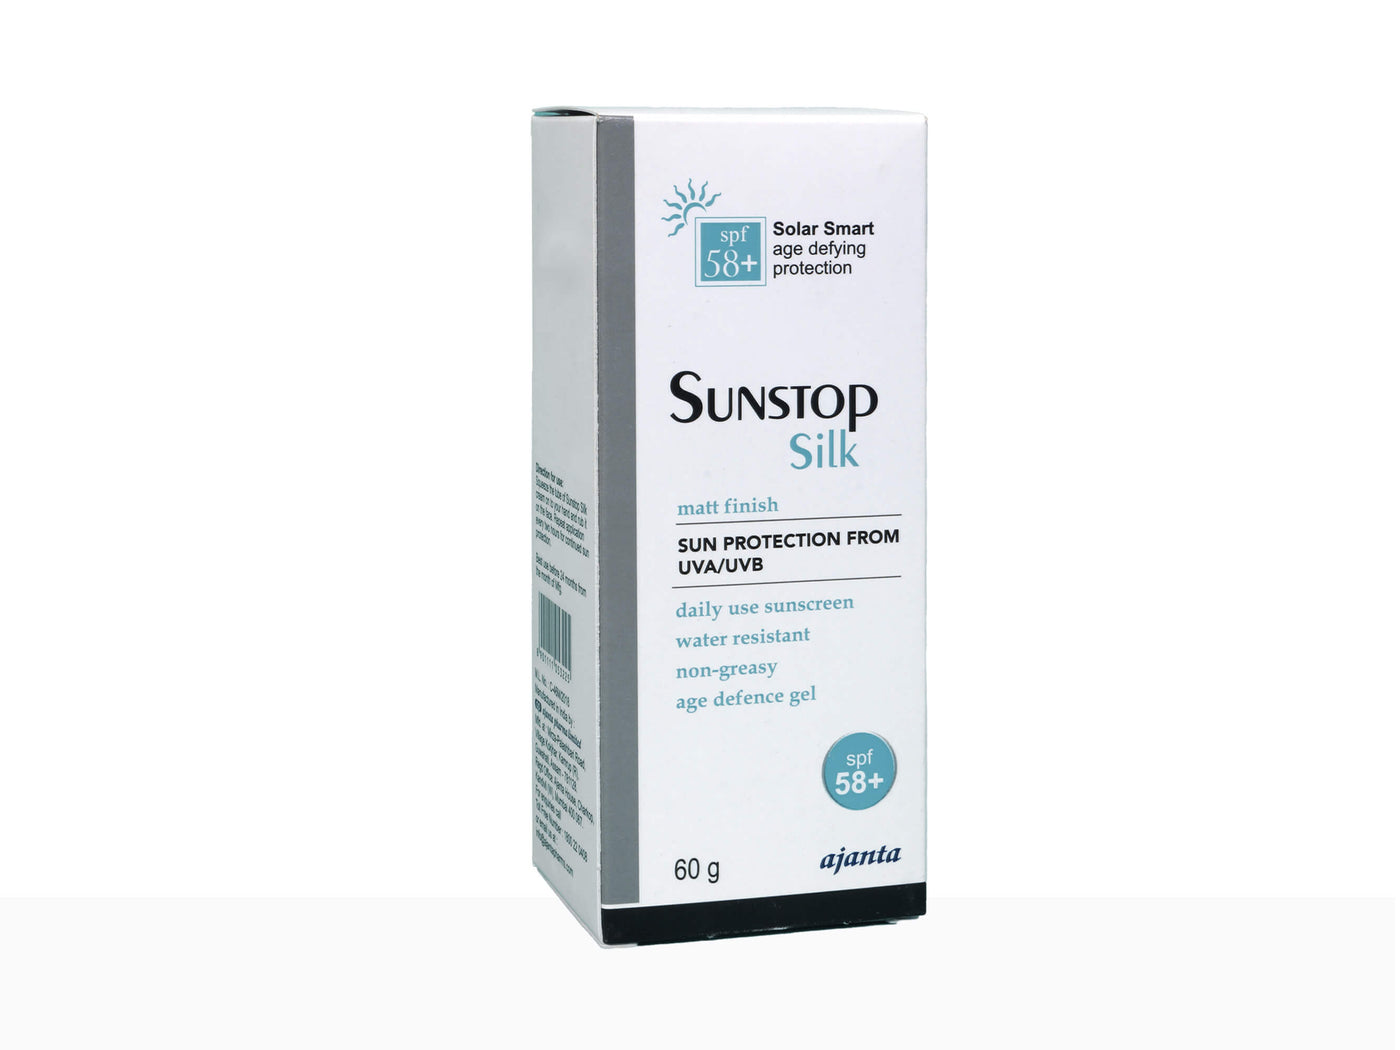 Sunstop silk matt finish spf 58+ - Clinikall